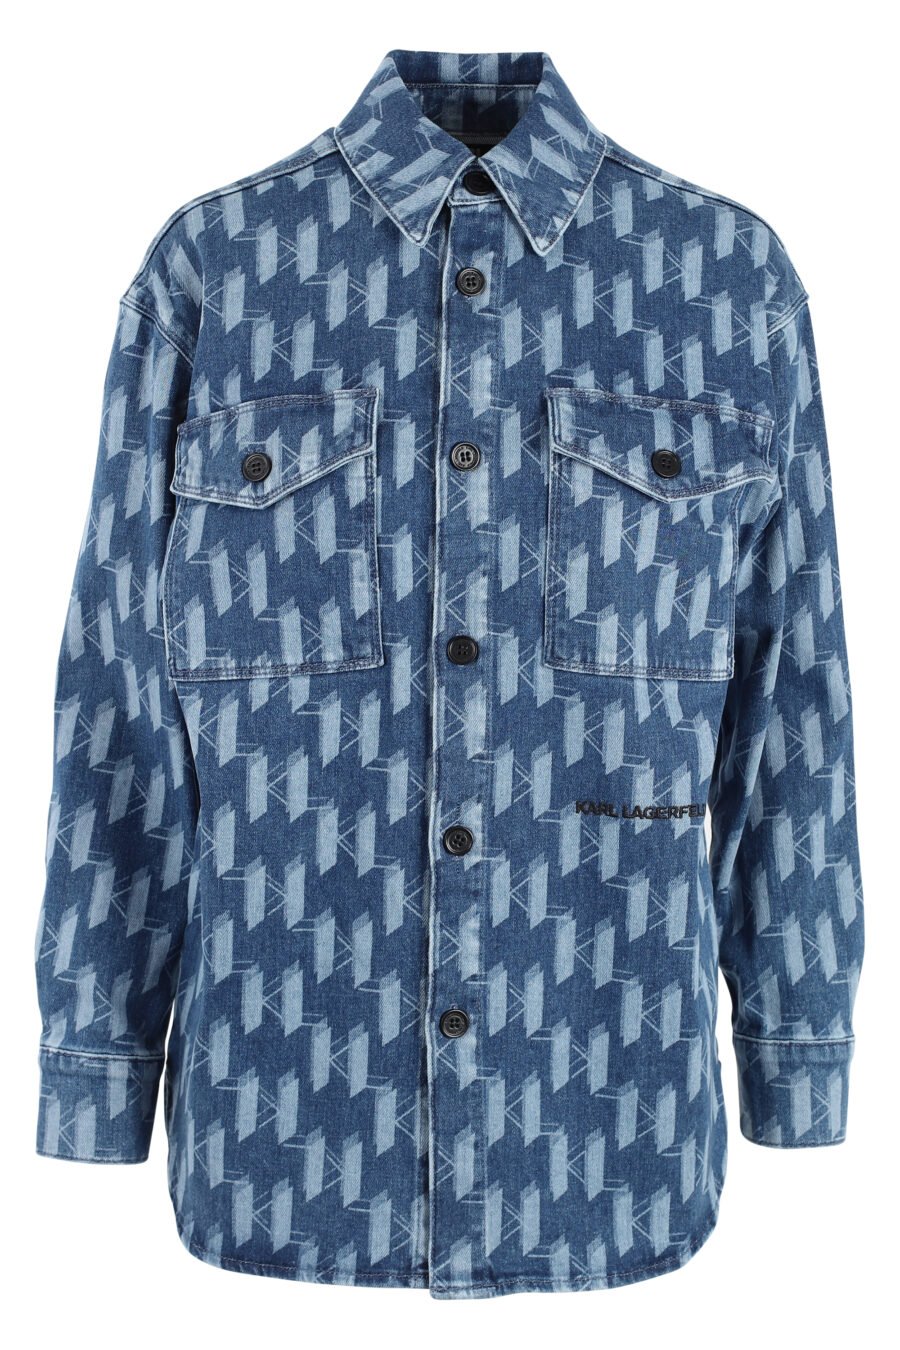 Blue denim jacket with monogram logo - IMG 4919